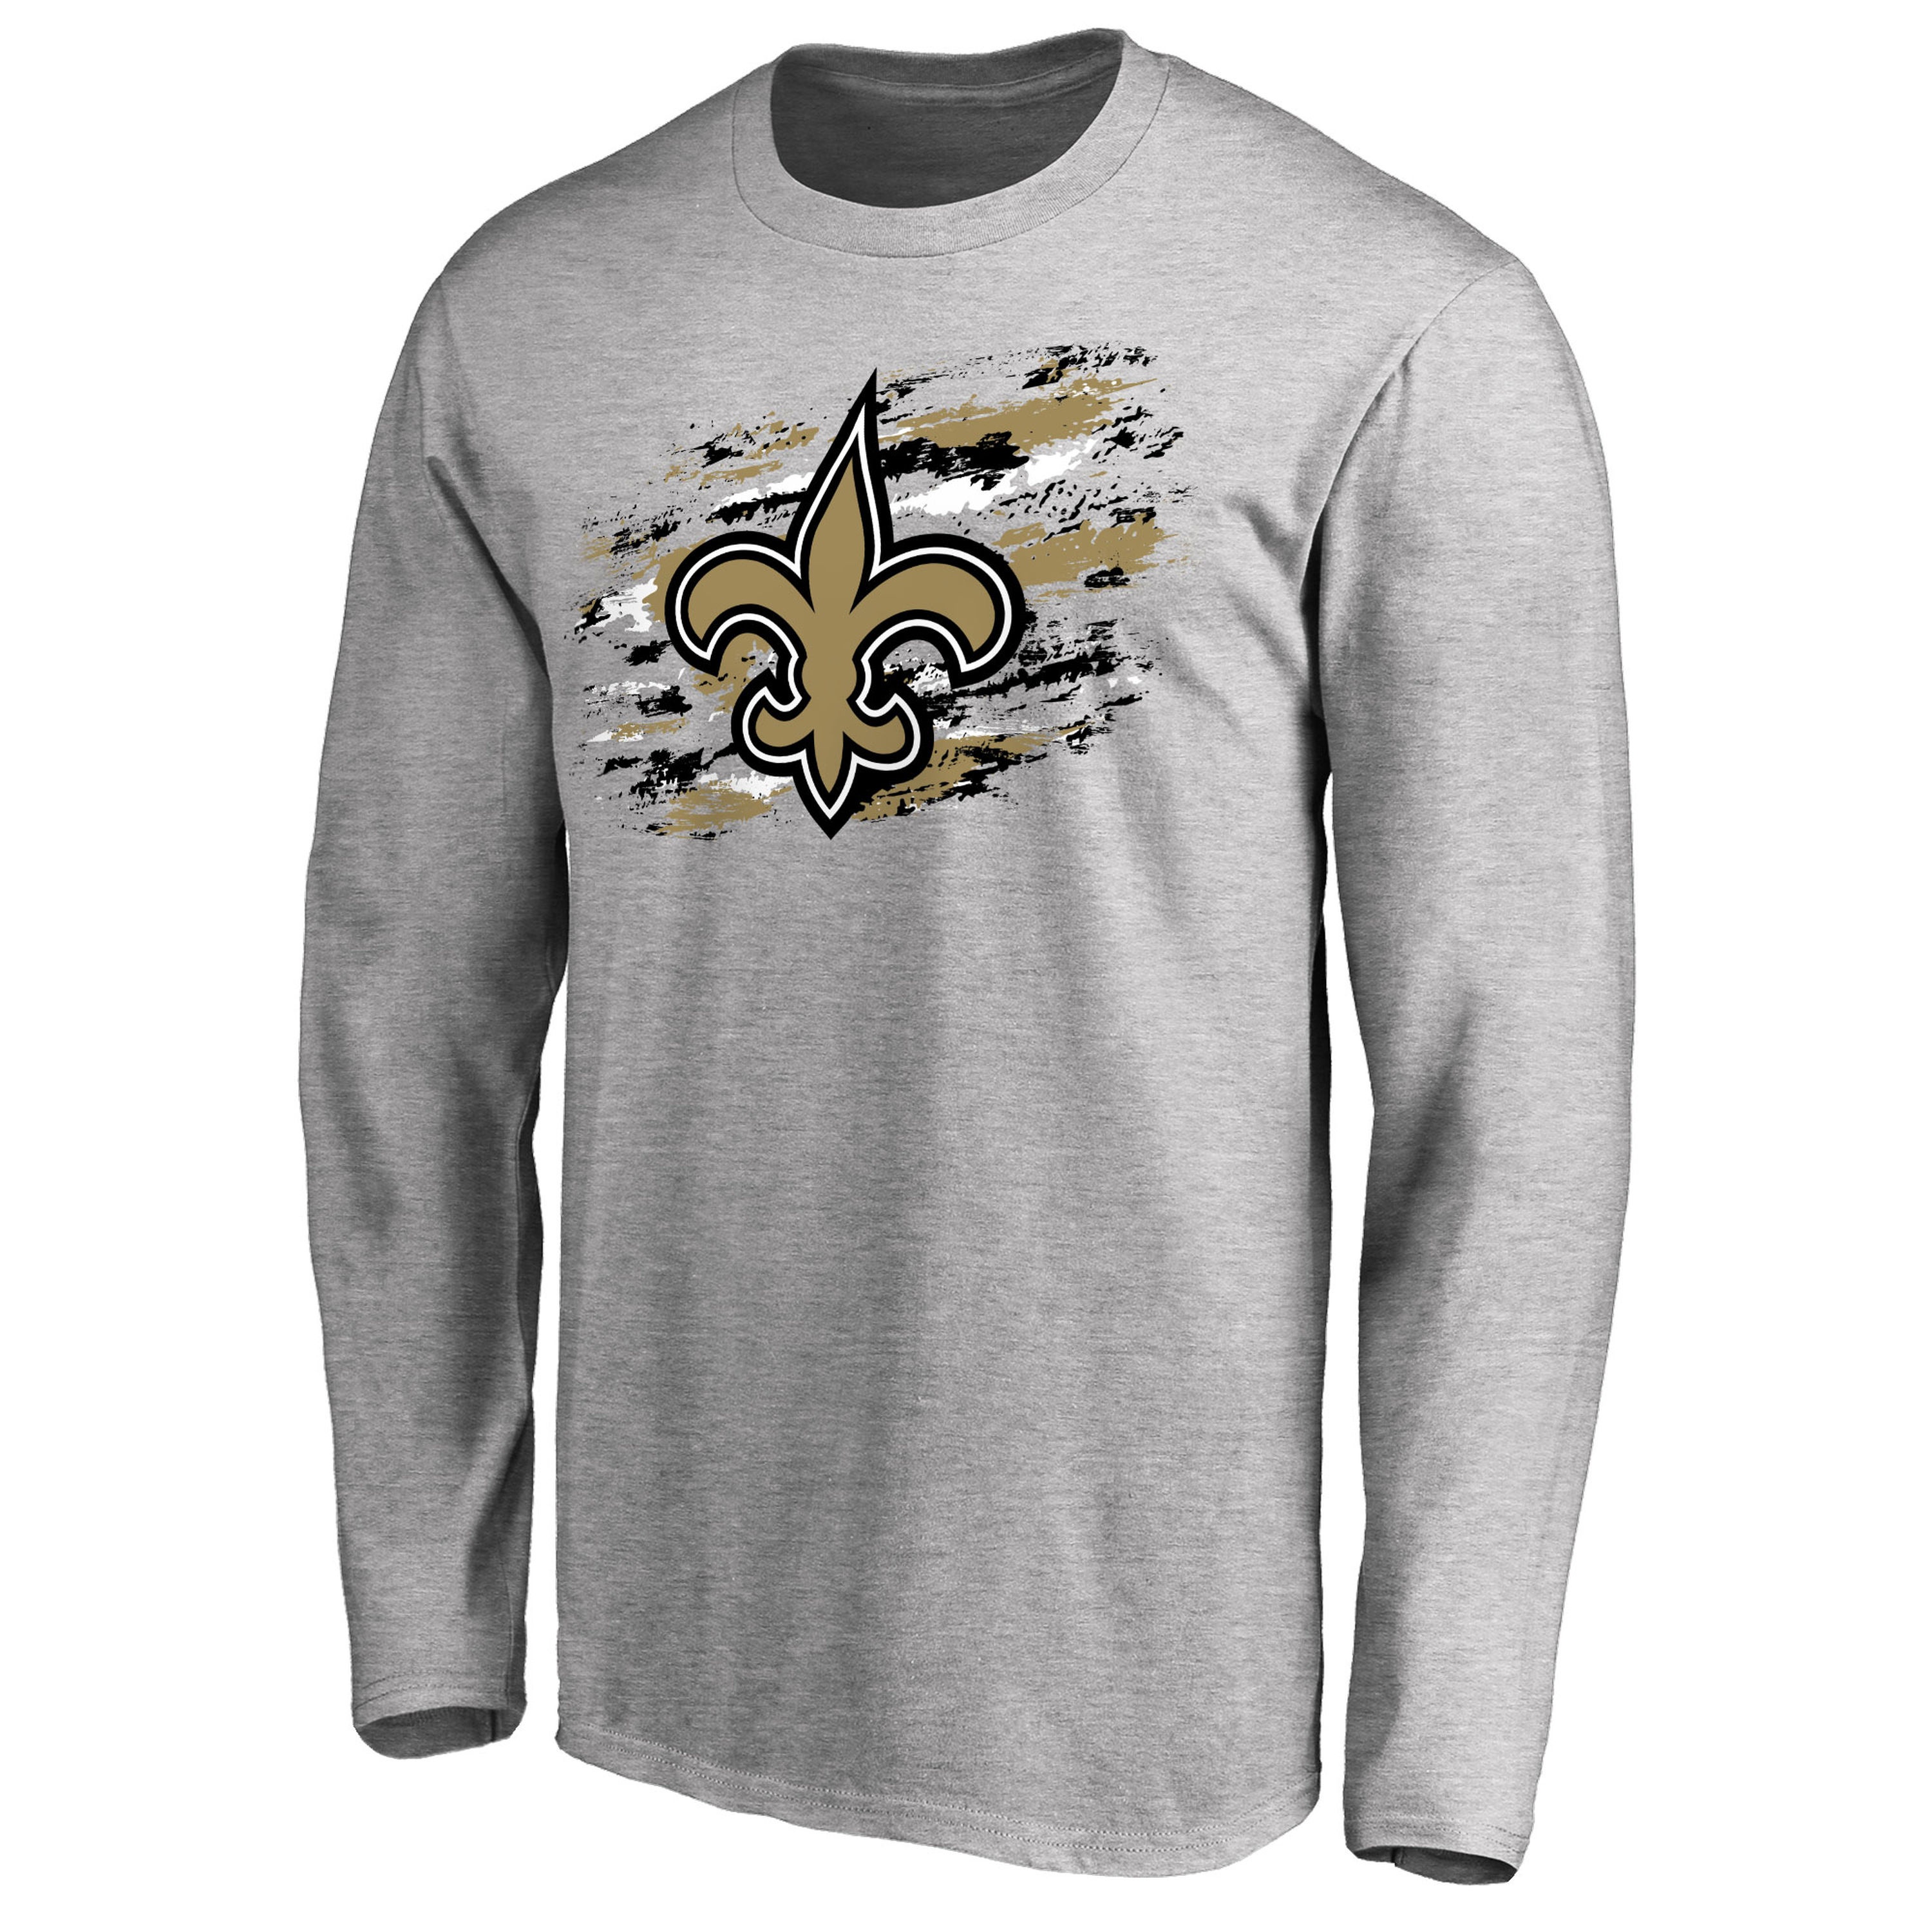 Men's New Orleans Saints NFL Pro Line Ash True Colors Long Sleeve T-Shirt